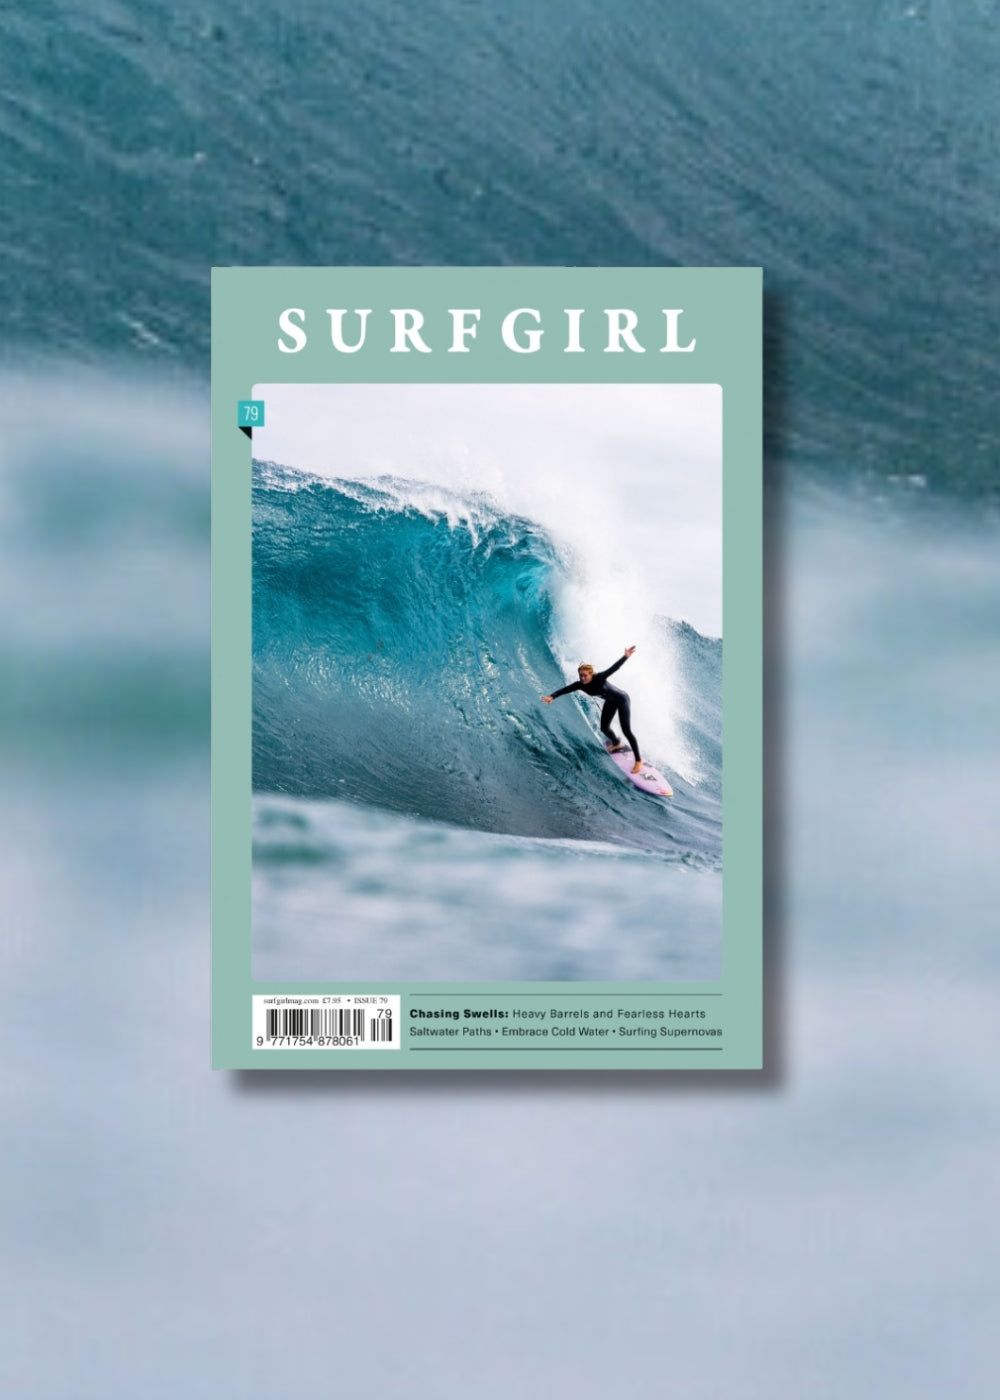 SurfGirl Magazine Issue 79